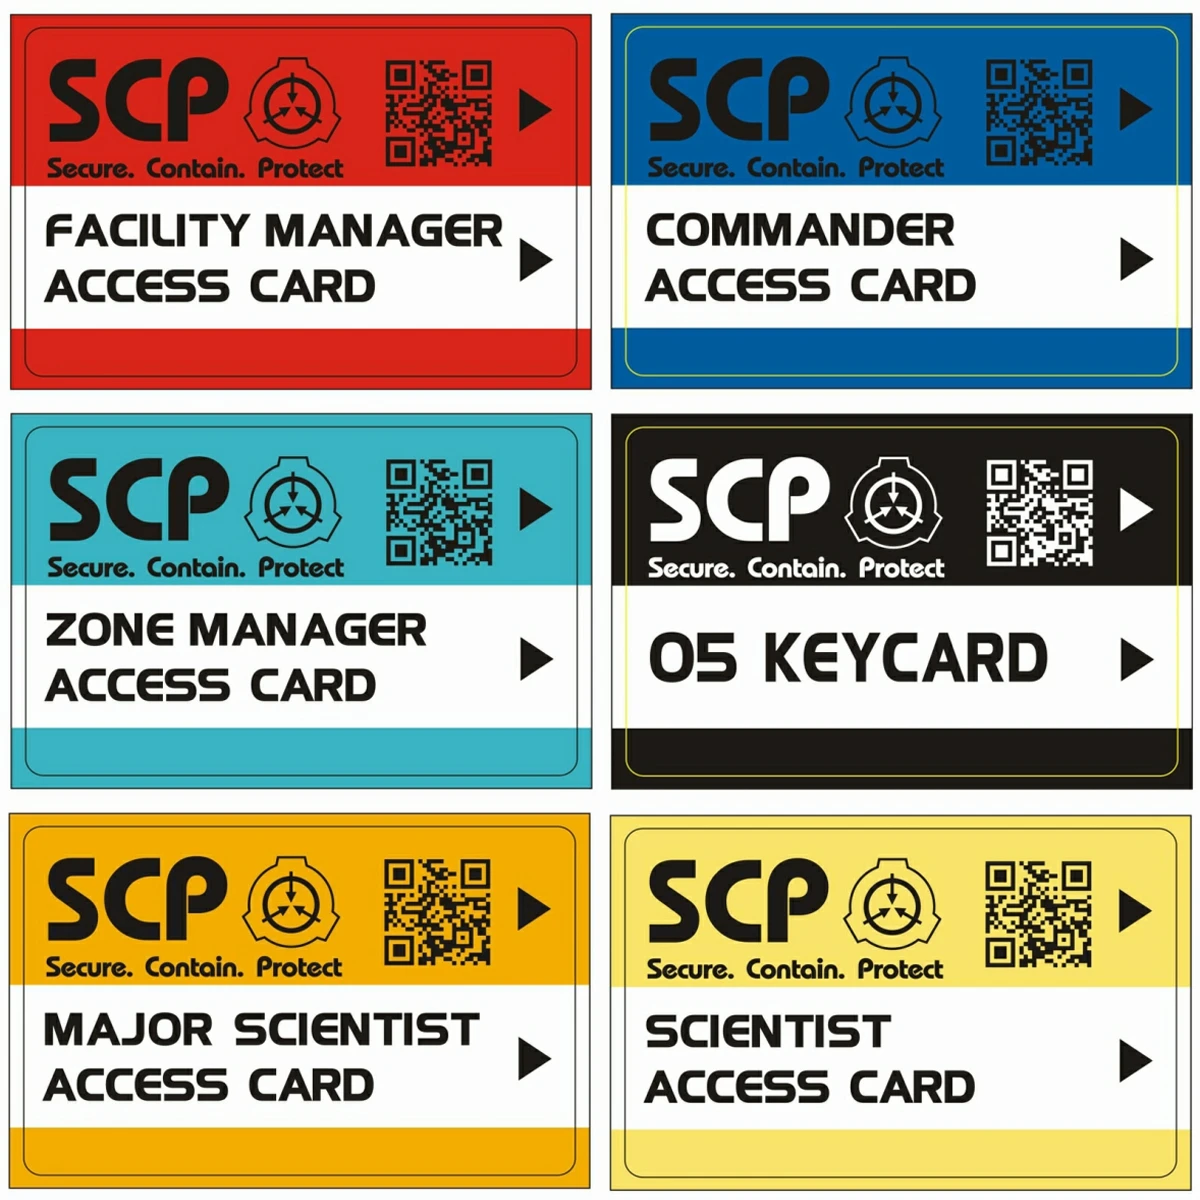 един комплект от 6 теми SCP GUARD, scp secret foundation, карти-ключове, специален лого, cosplay, карта за достъп scp-19